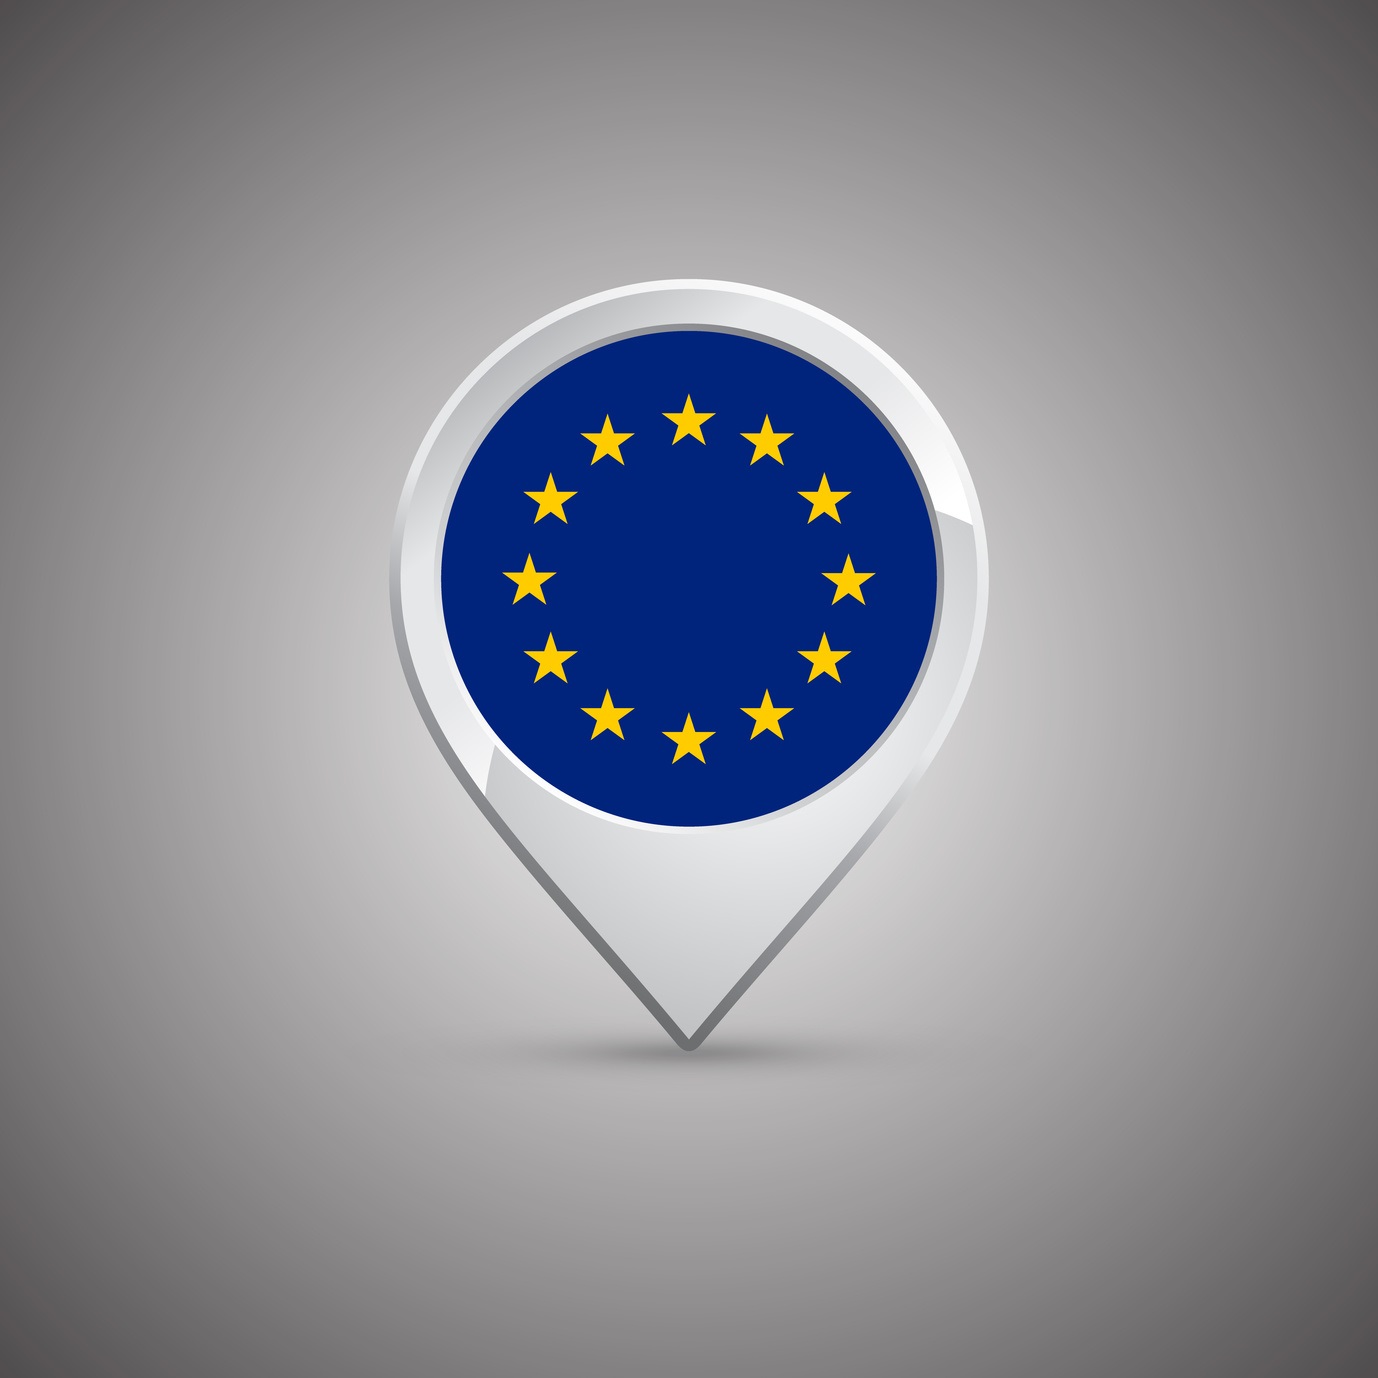 zdjęcie przedstawia znacznik mapowy z gwiazdkami UE